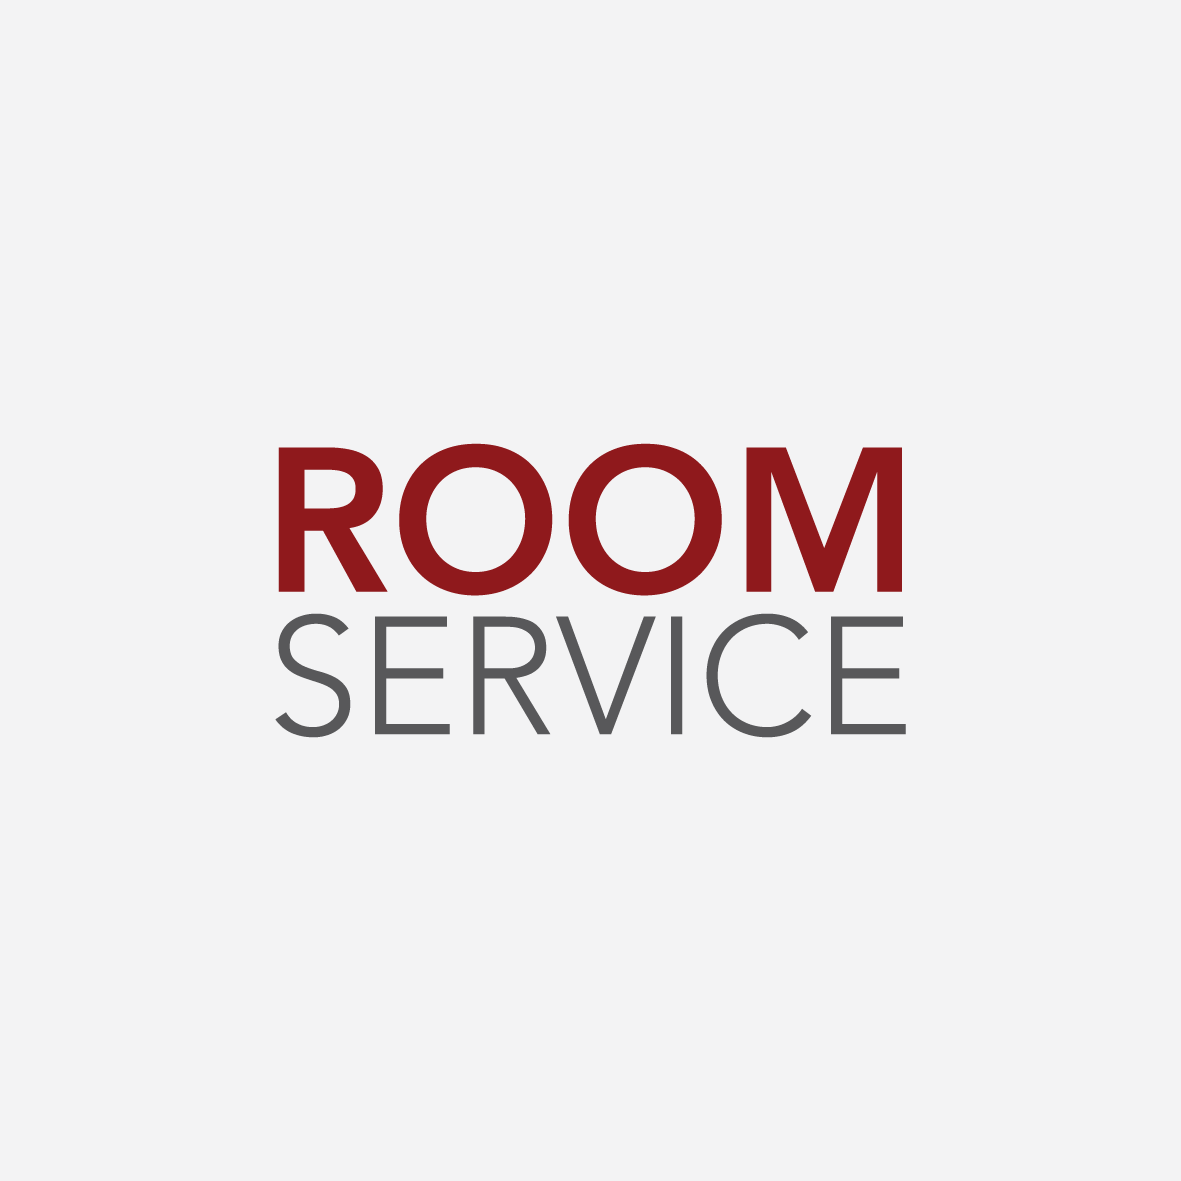 Room Service Là Gì? Tìm Hiểu Về Room Service Là Gì?